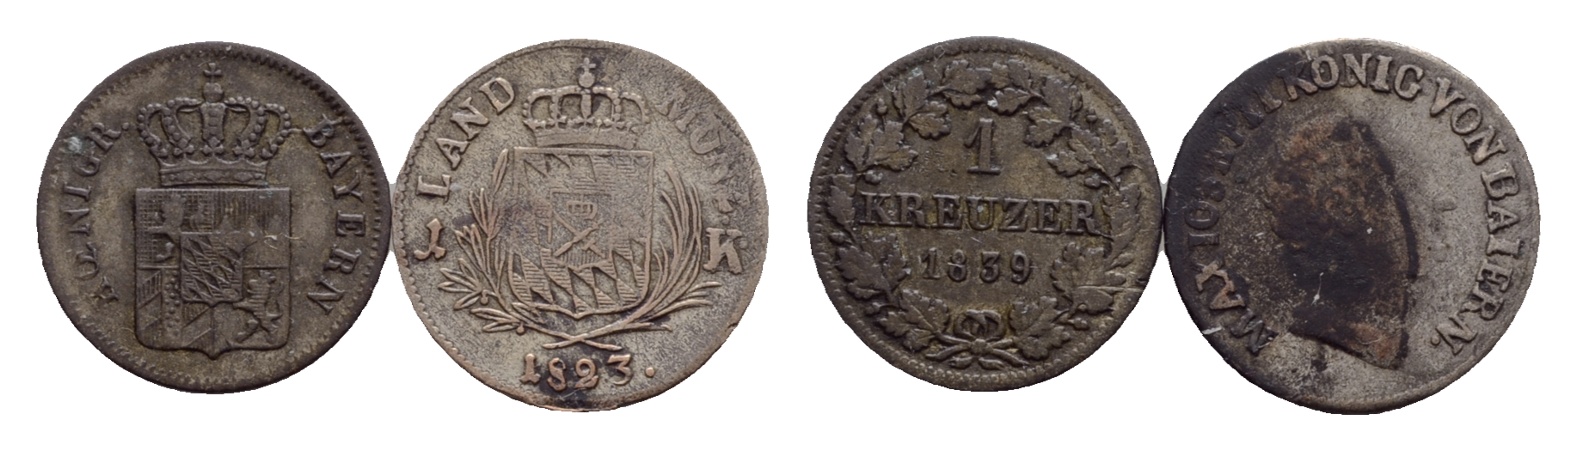  Altdeutschland, 2 Kleinmünzen 1823/1839   